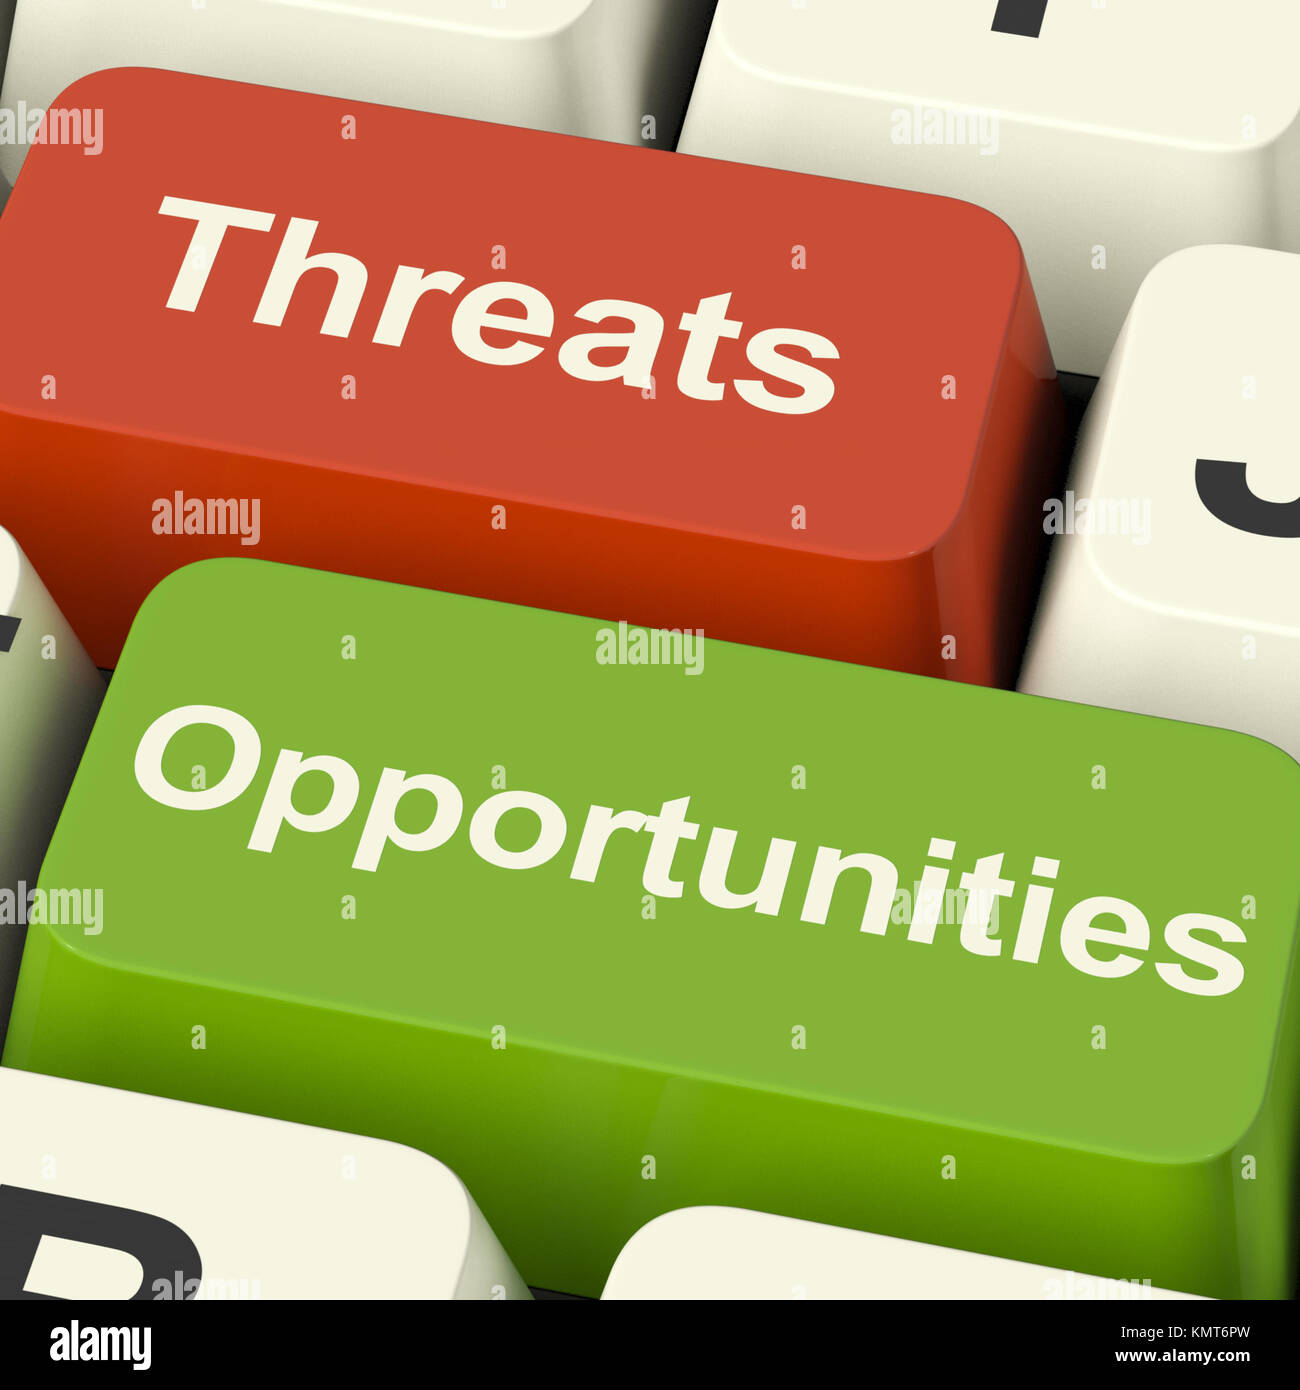 Las amenazas y oportunidades claves del equipo mostrando los riesgos empresariales o mejoras. Foto de stock